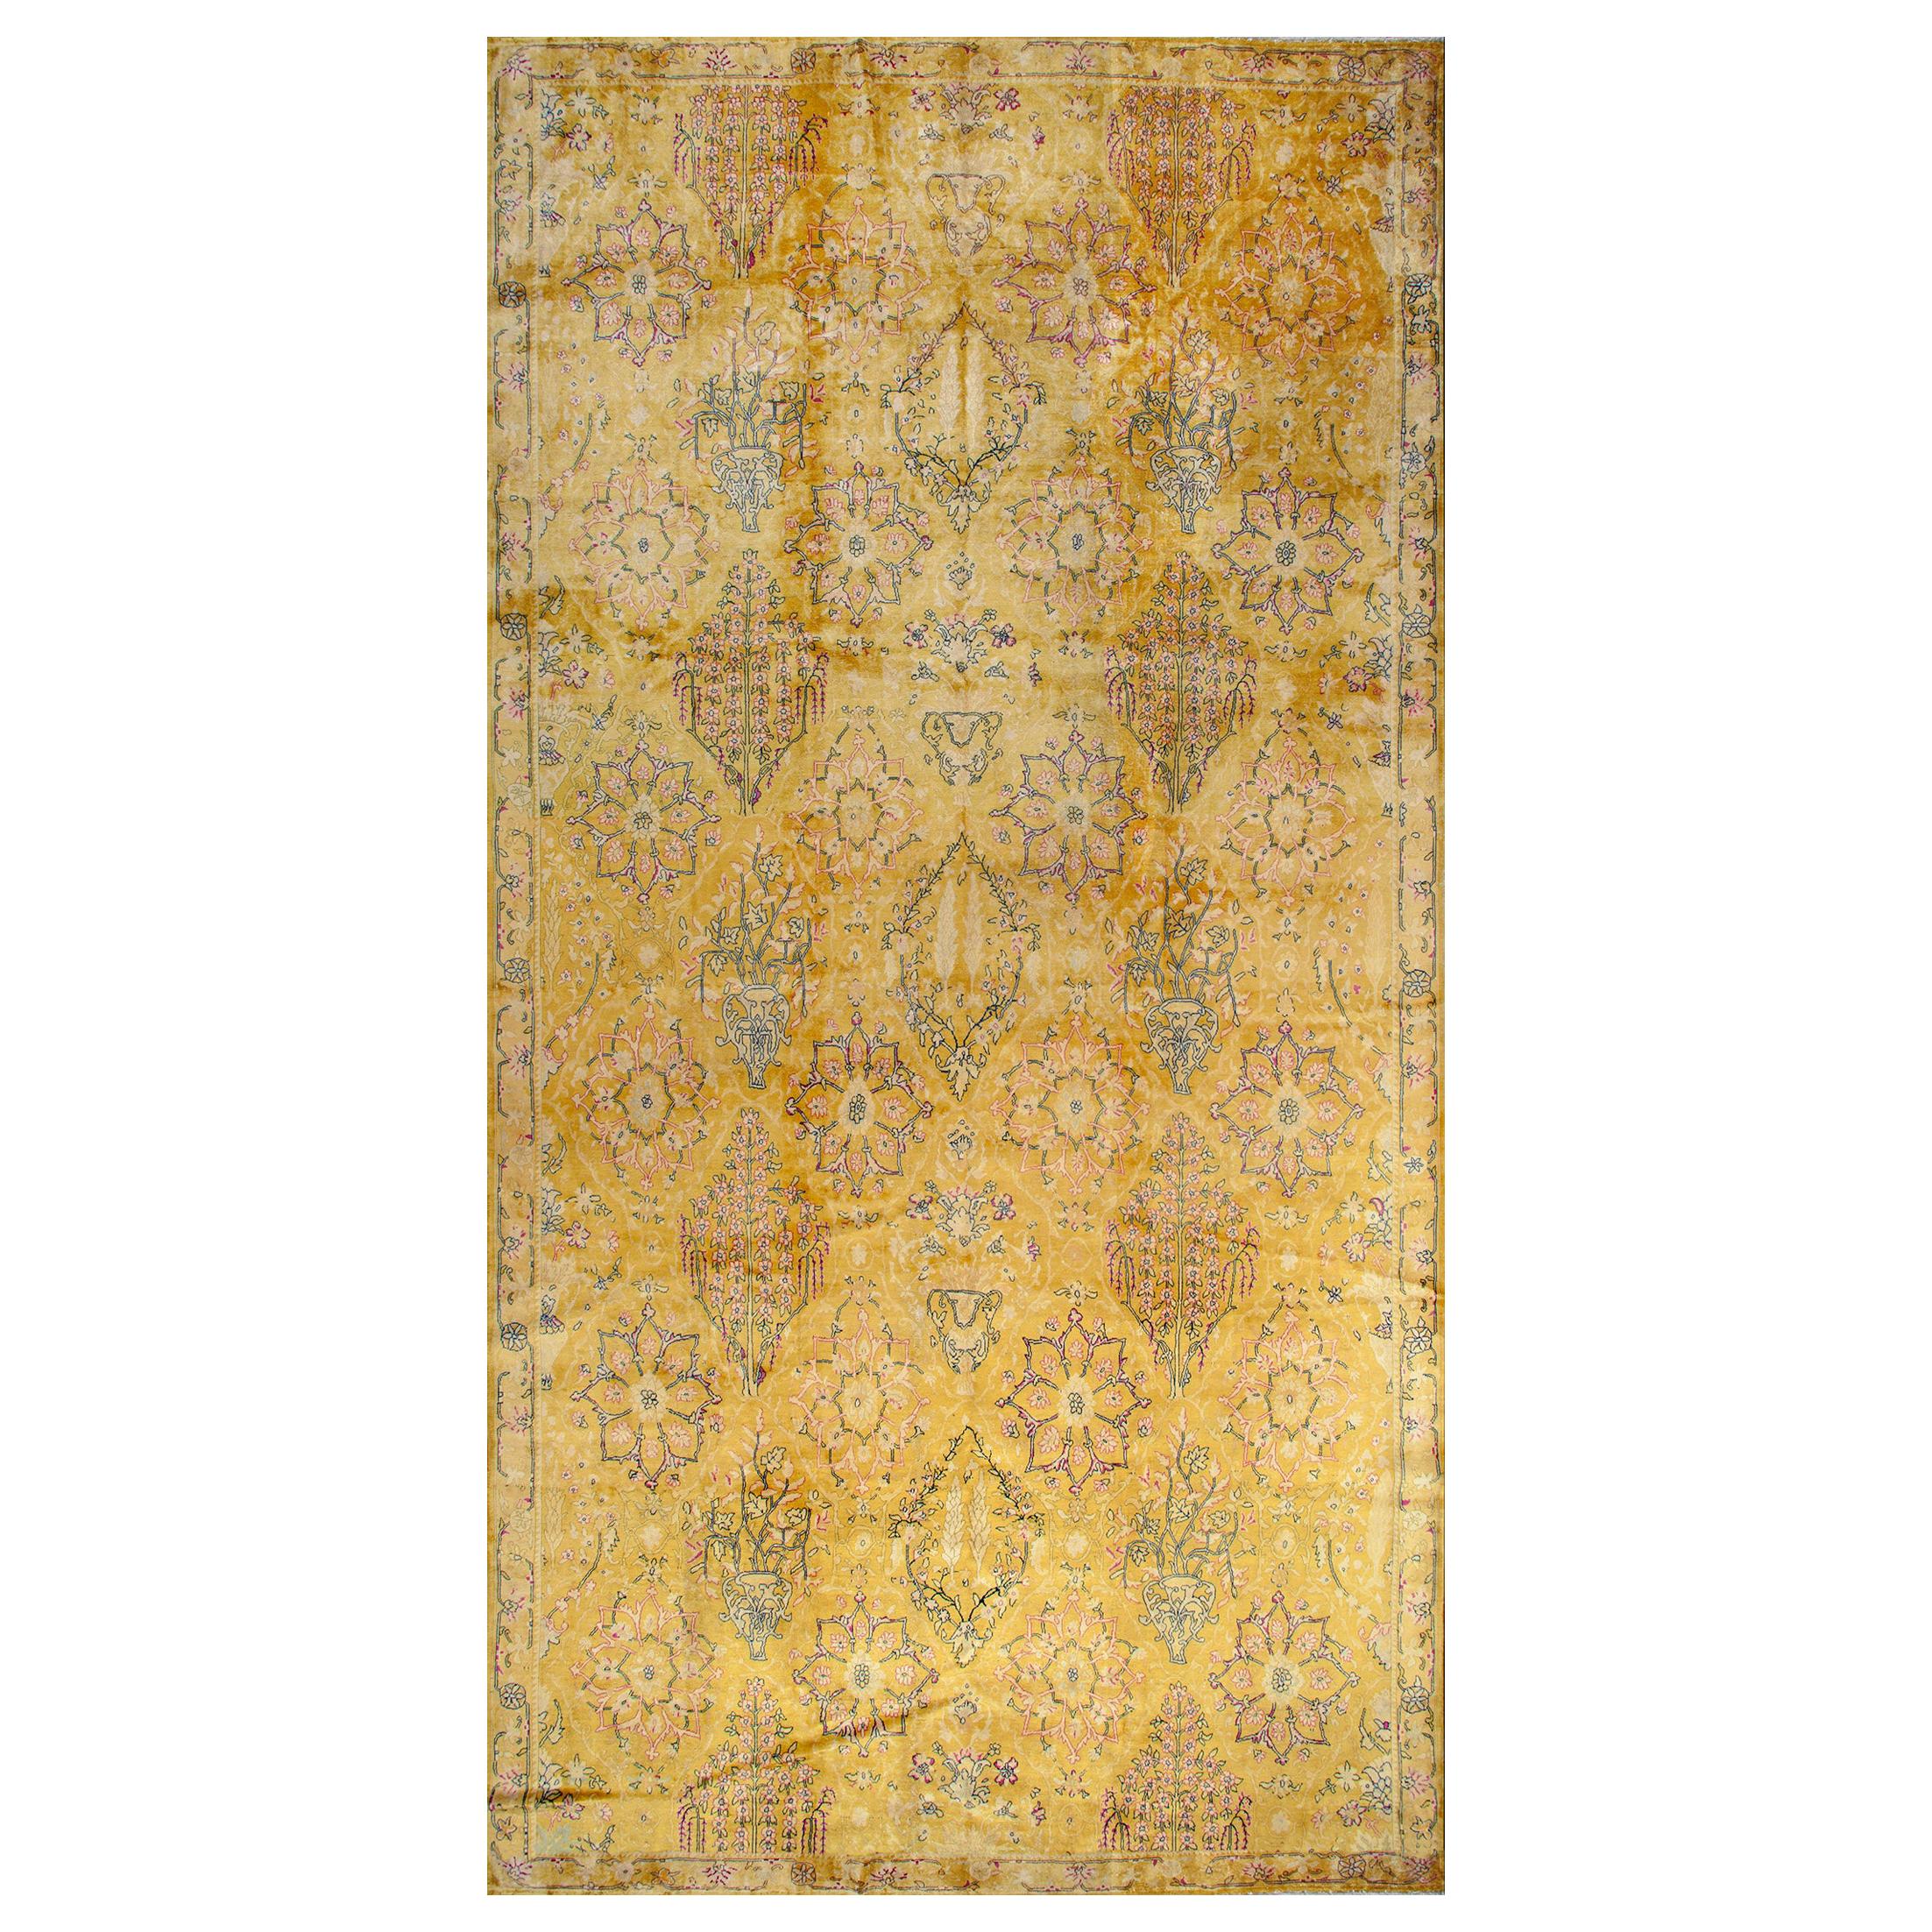 Indischer Lahore-Teppich des frühen 20. Jahrhunderts ( 11' x 22'4" - 335 x 680 cm)